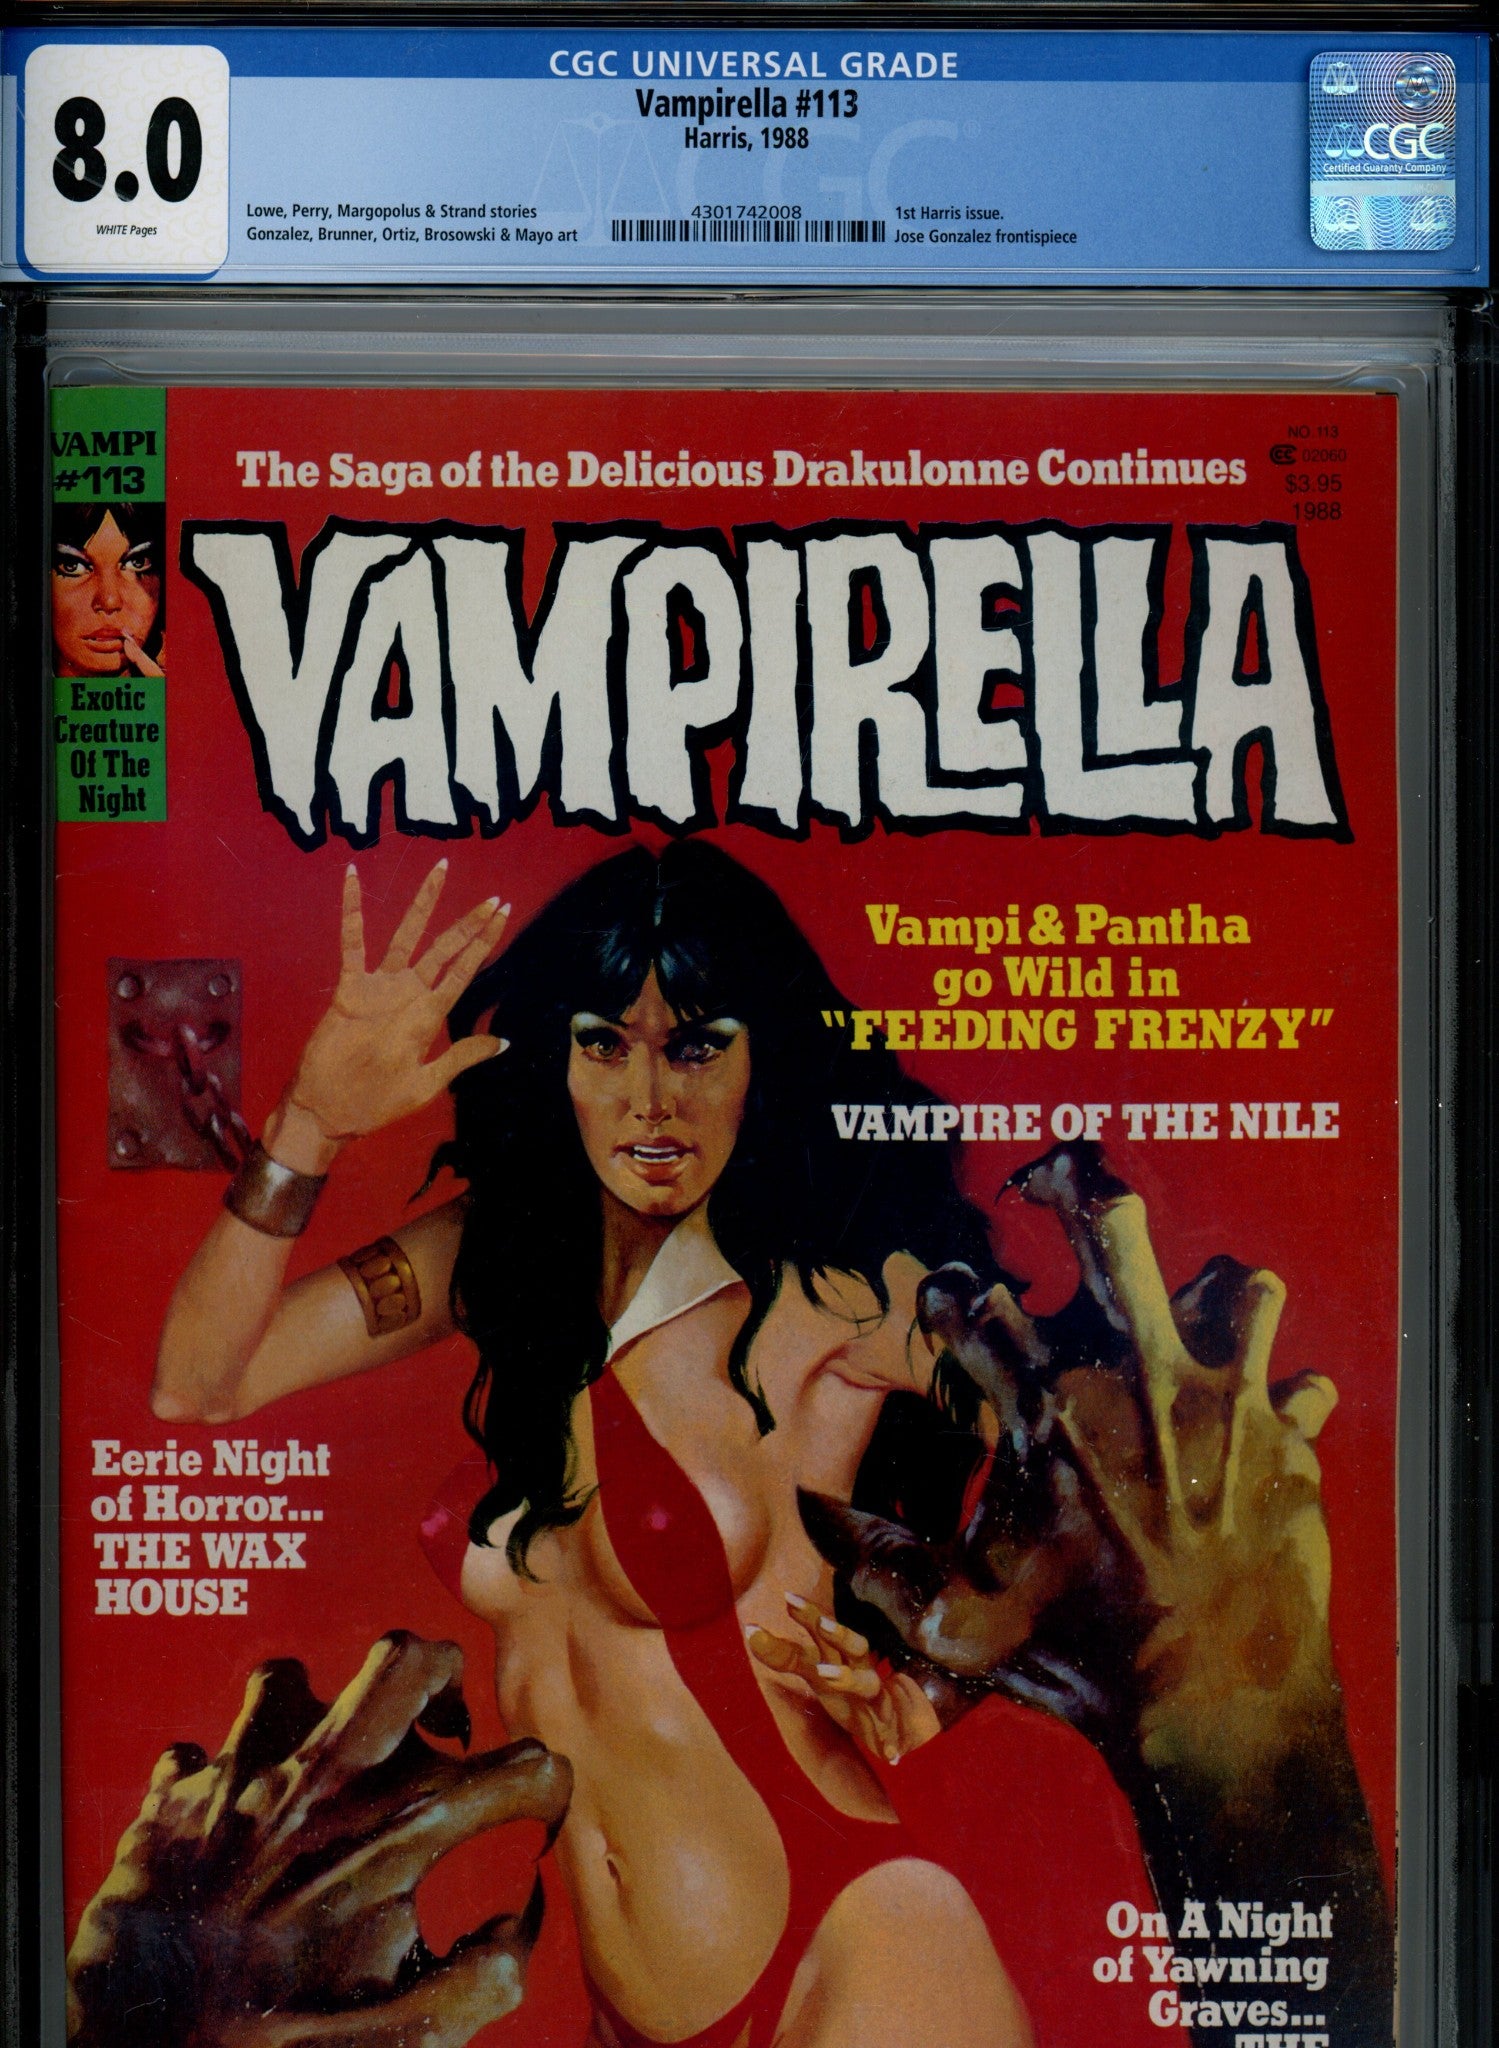 Vampirella Vol 1 113 CGC 8.0 (1988)